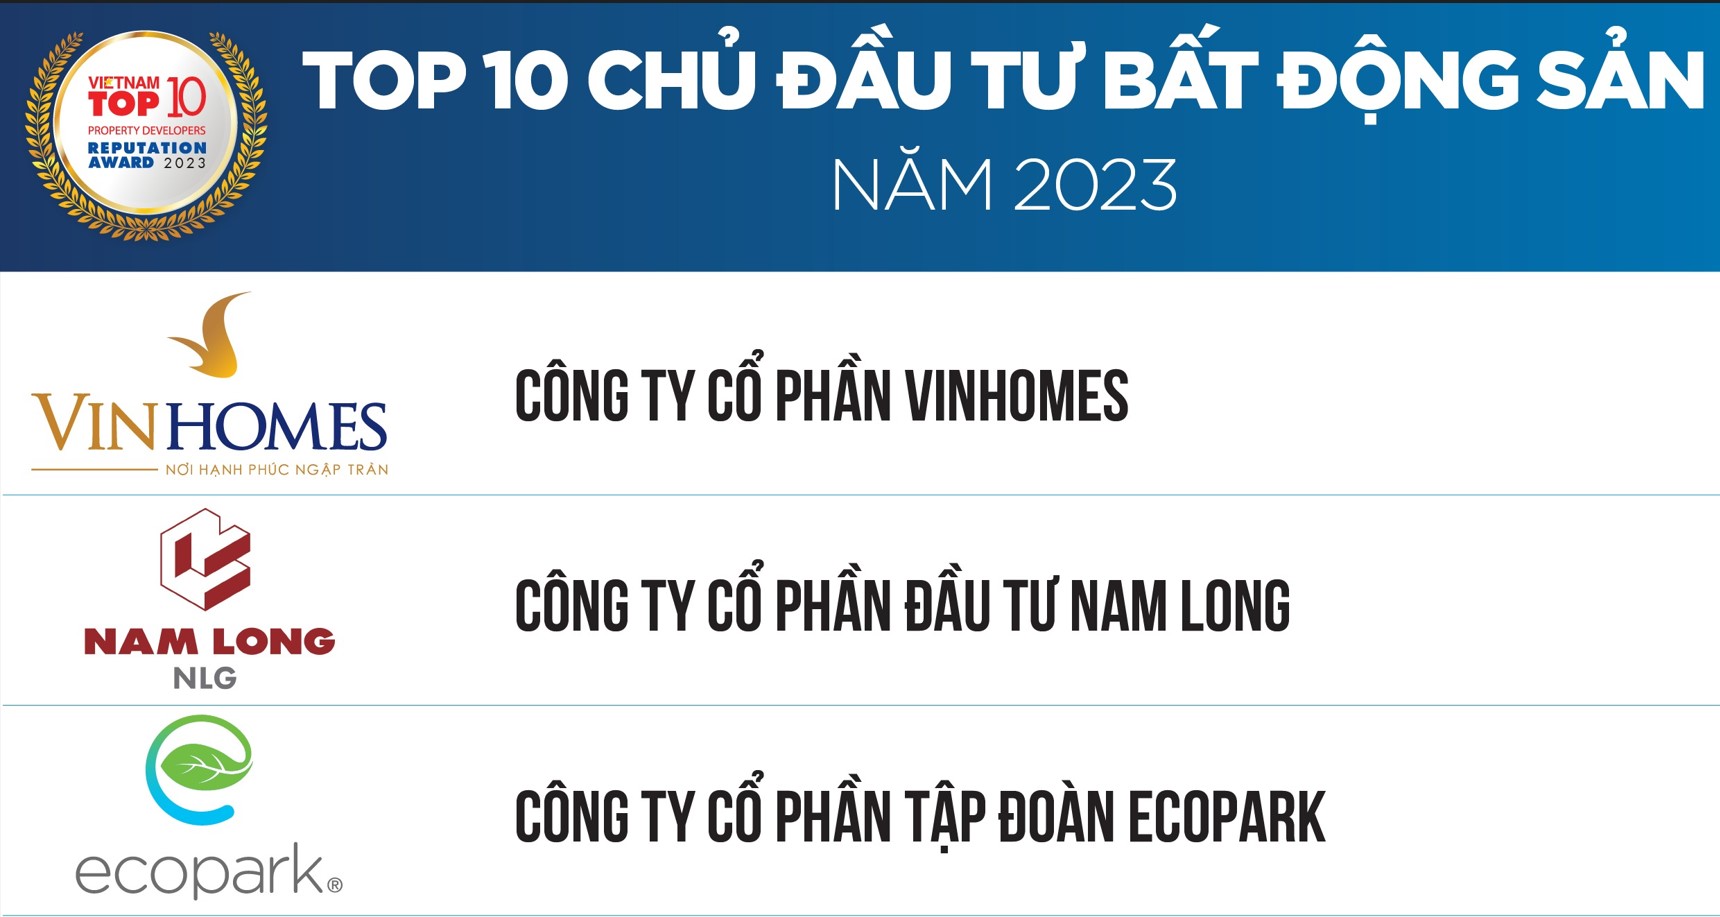 ecopark top 10 chủ đầu tư bất động sản uy tín Việt Nam